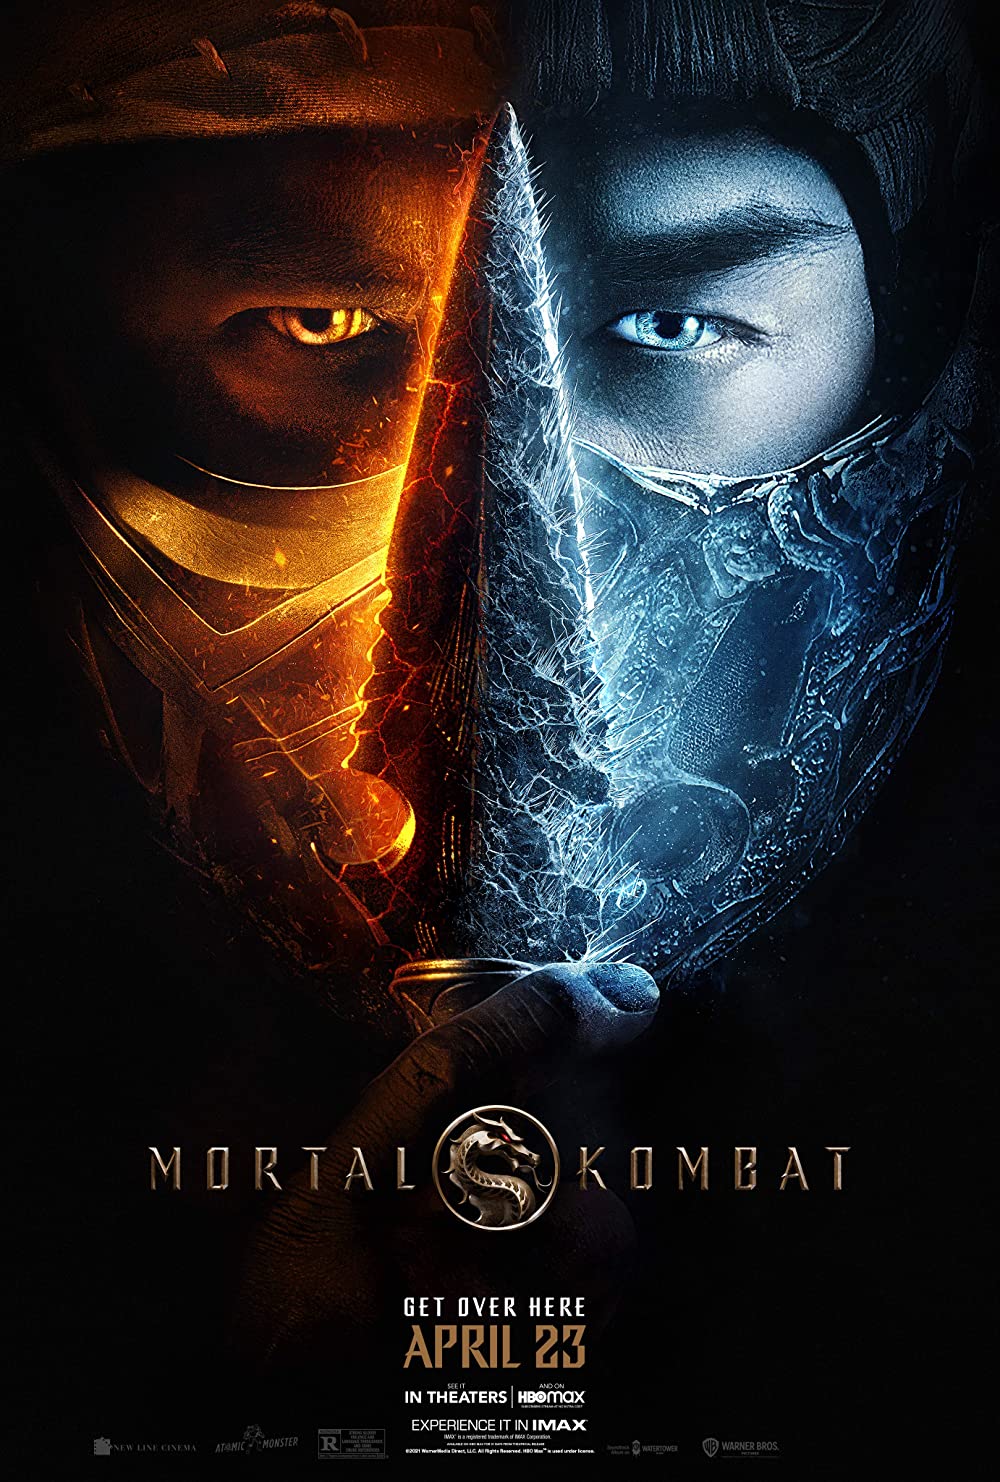 Filmbeschreibung zu Mortal Kombat